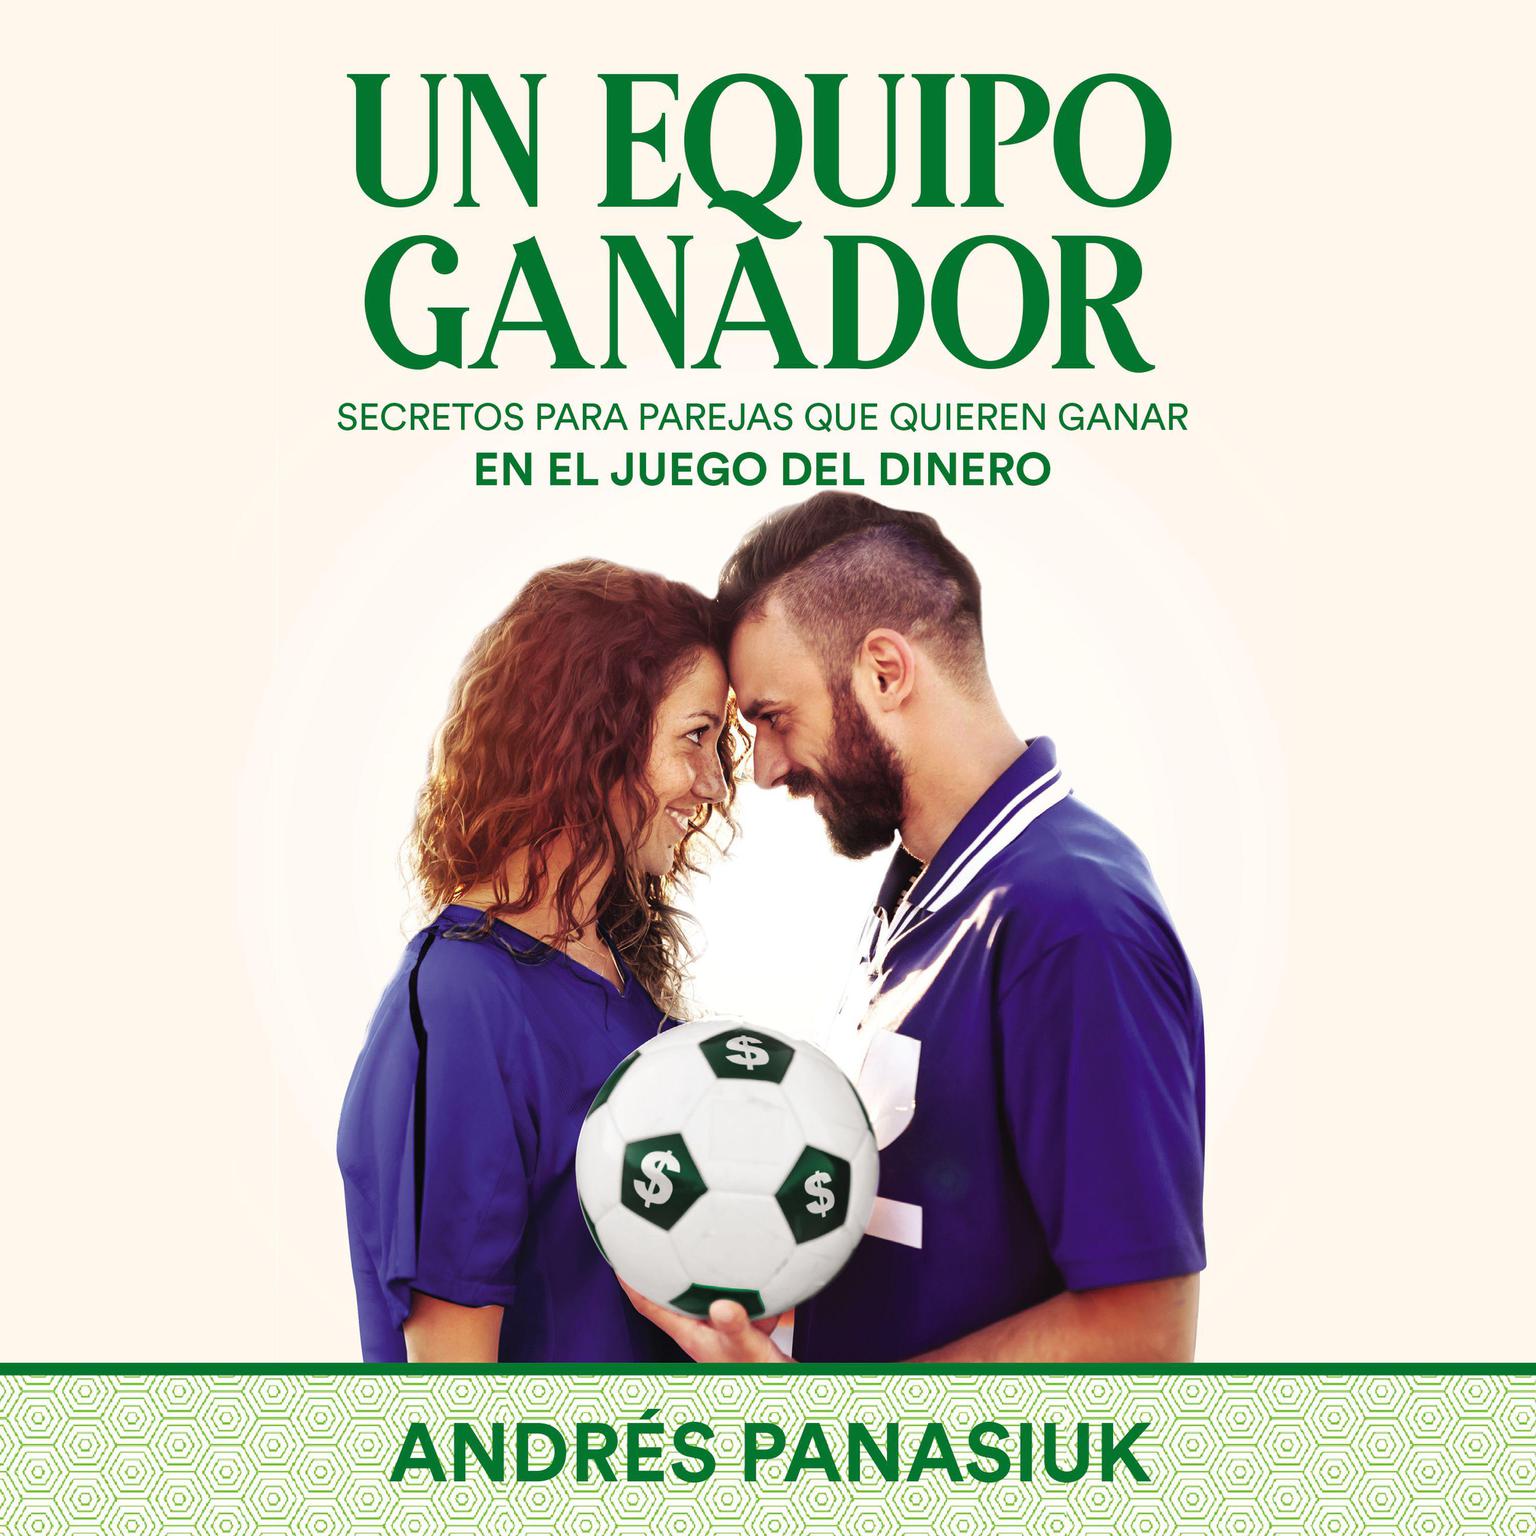 Un equipo ganador: Secretos para parejas que quieren ganar en el juego del dinero Audiobook, by Andrés Panasiuk